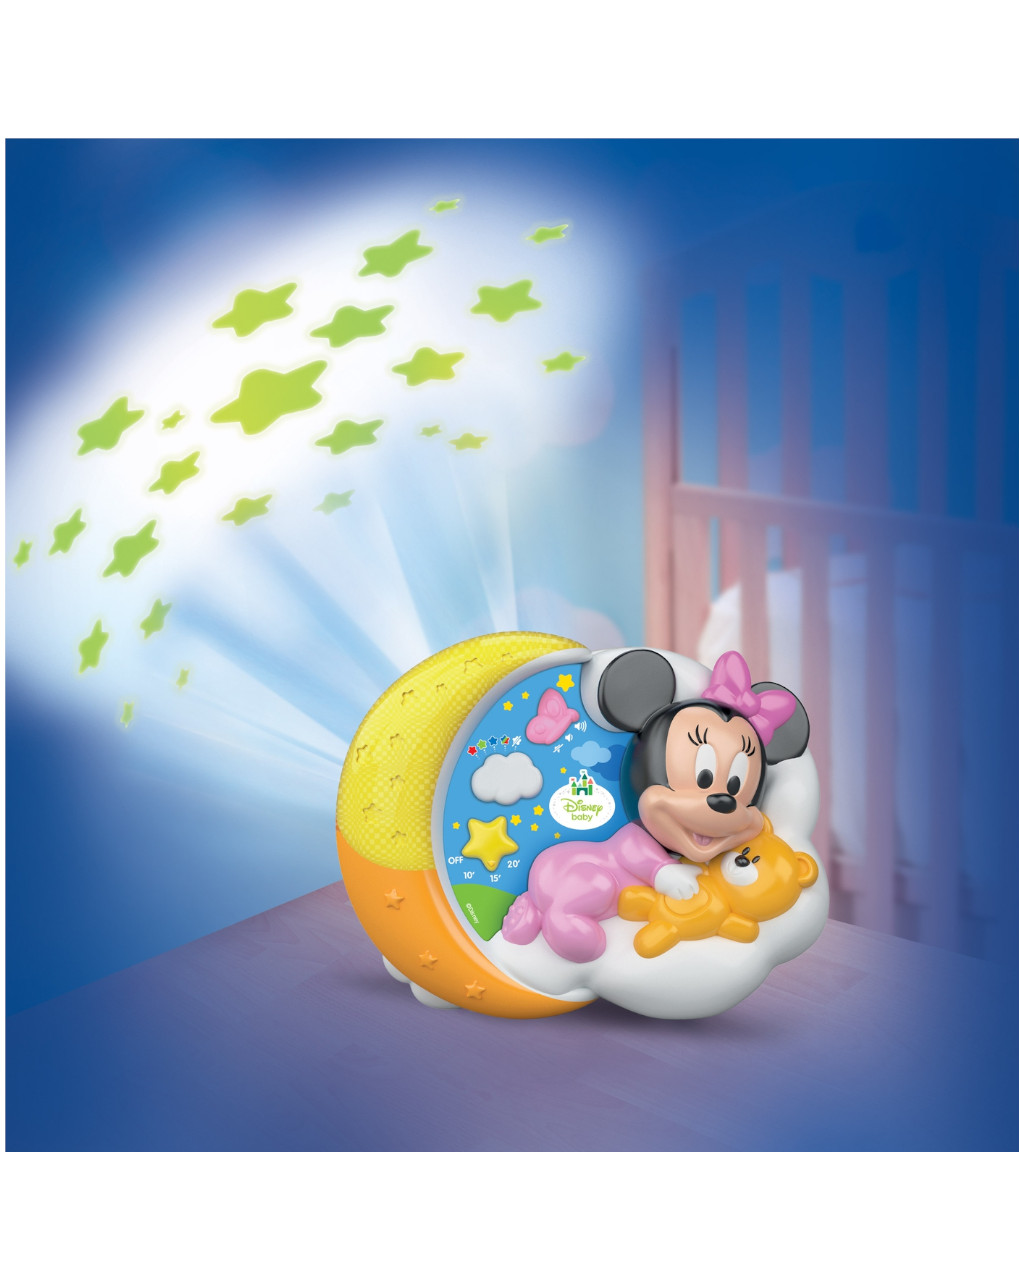 Disney baby - baby minnie proyector estrellas mágicas - Clementoni